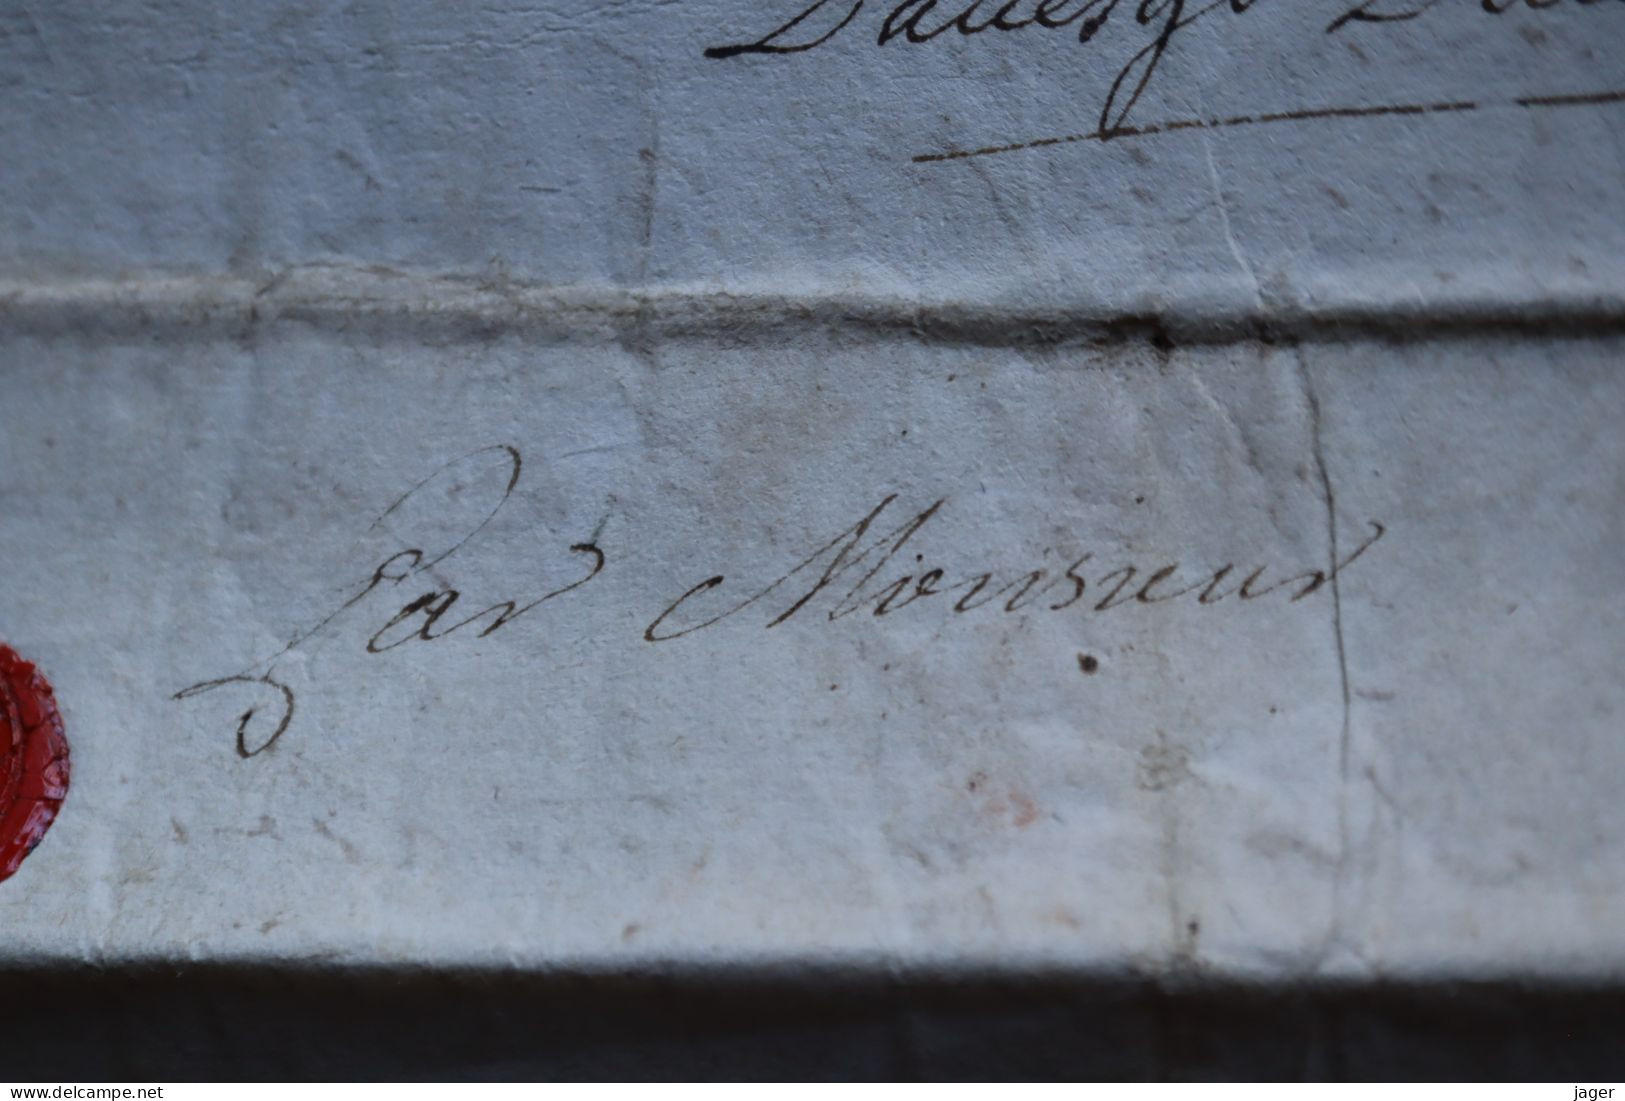 1750 Maréchaussée de France  département d'Argentan  Chasse pêche  cachet autographe